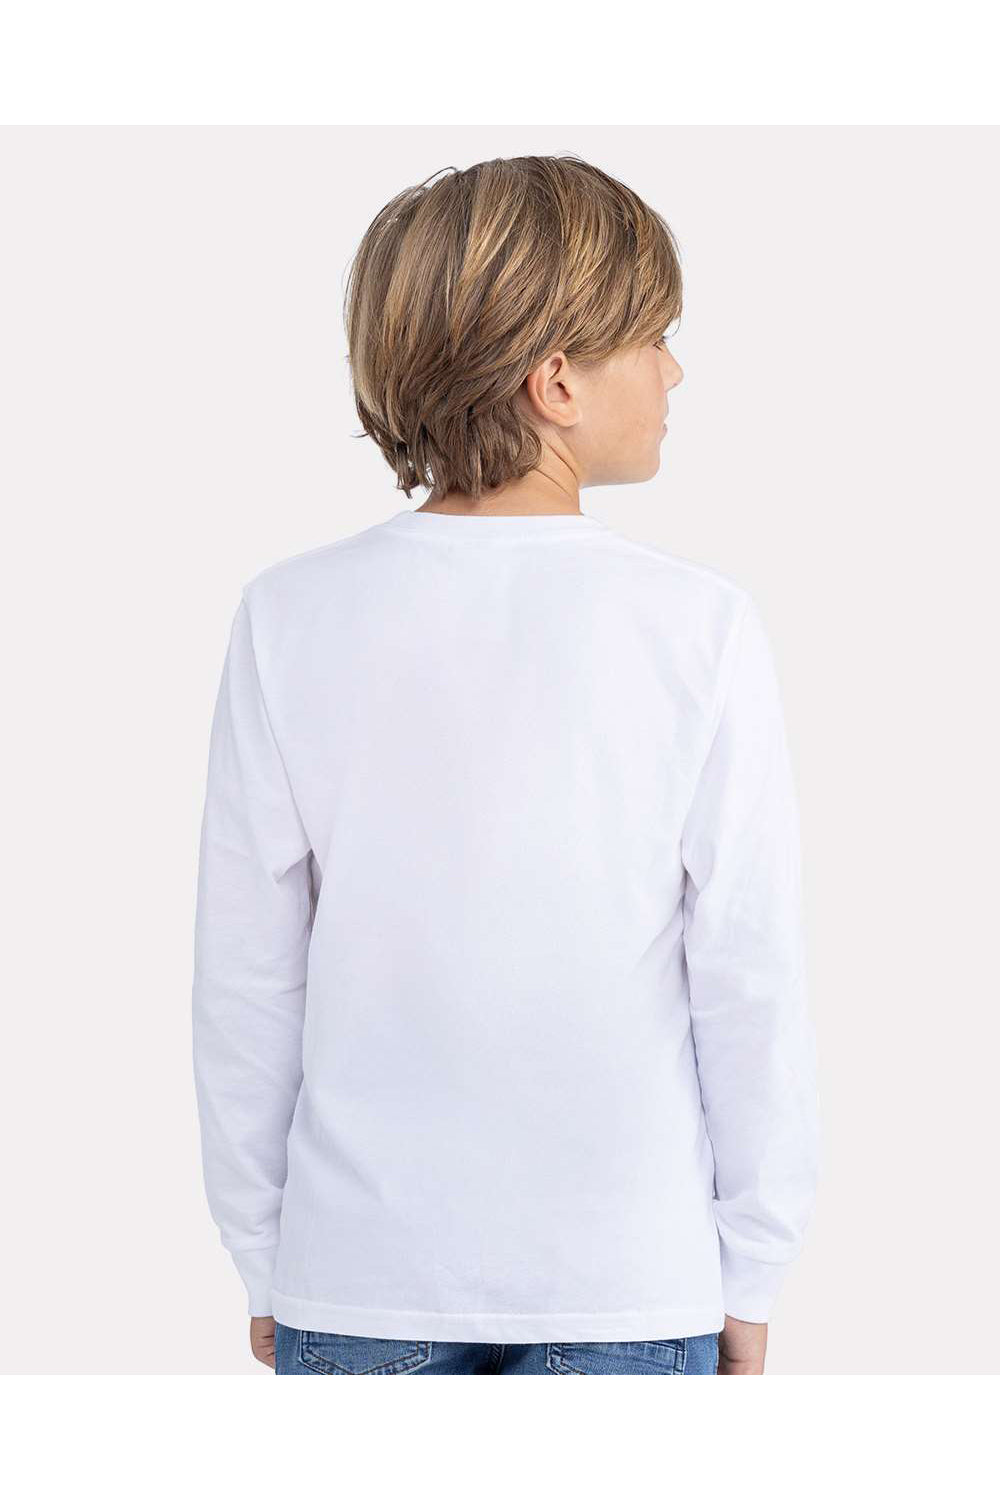 Next Level 3311 Youth Long Sleeve Crewneck T-Shirt White Model Back